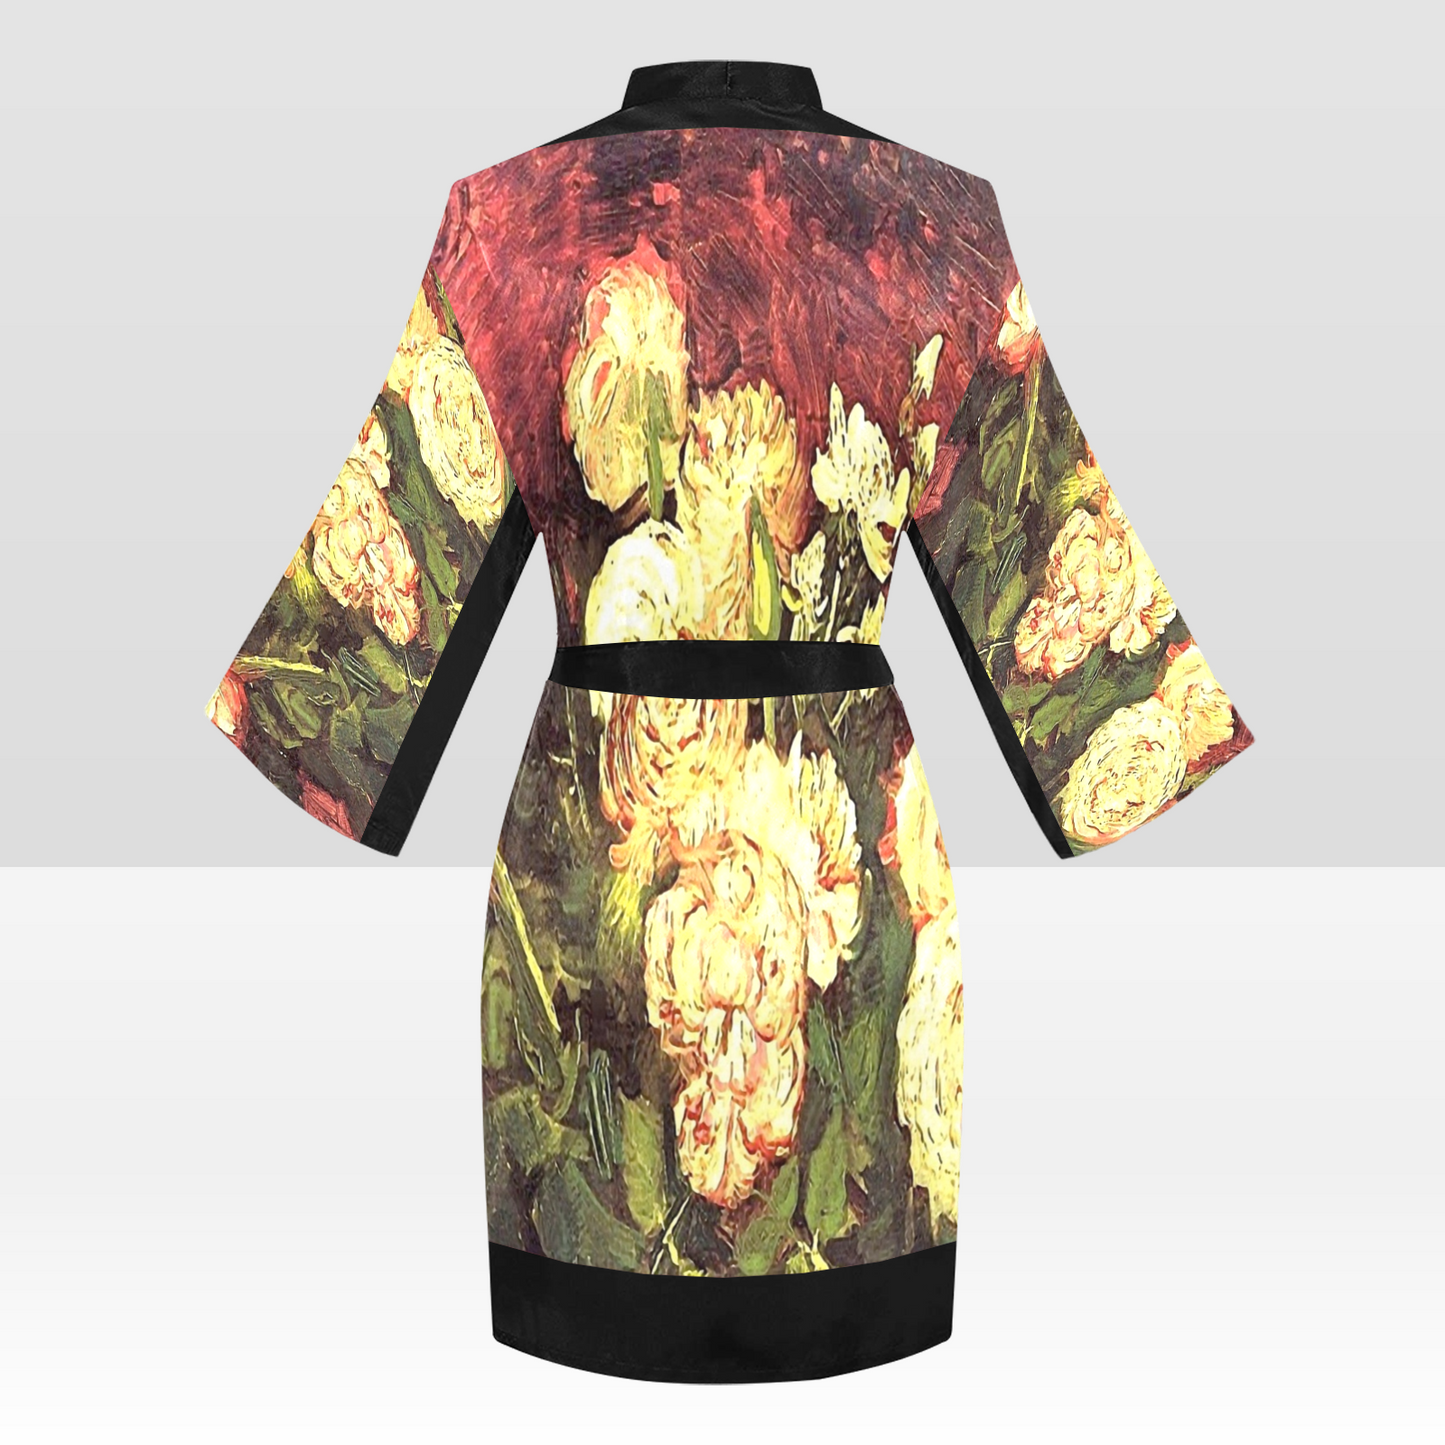 Vintage Floral Kimono Robe, Black or White Trim, Sizes XS to 2XL, Design 27